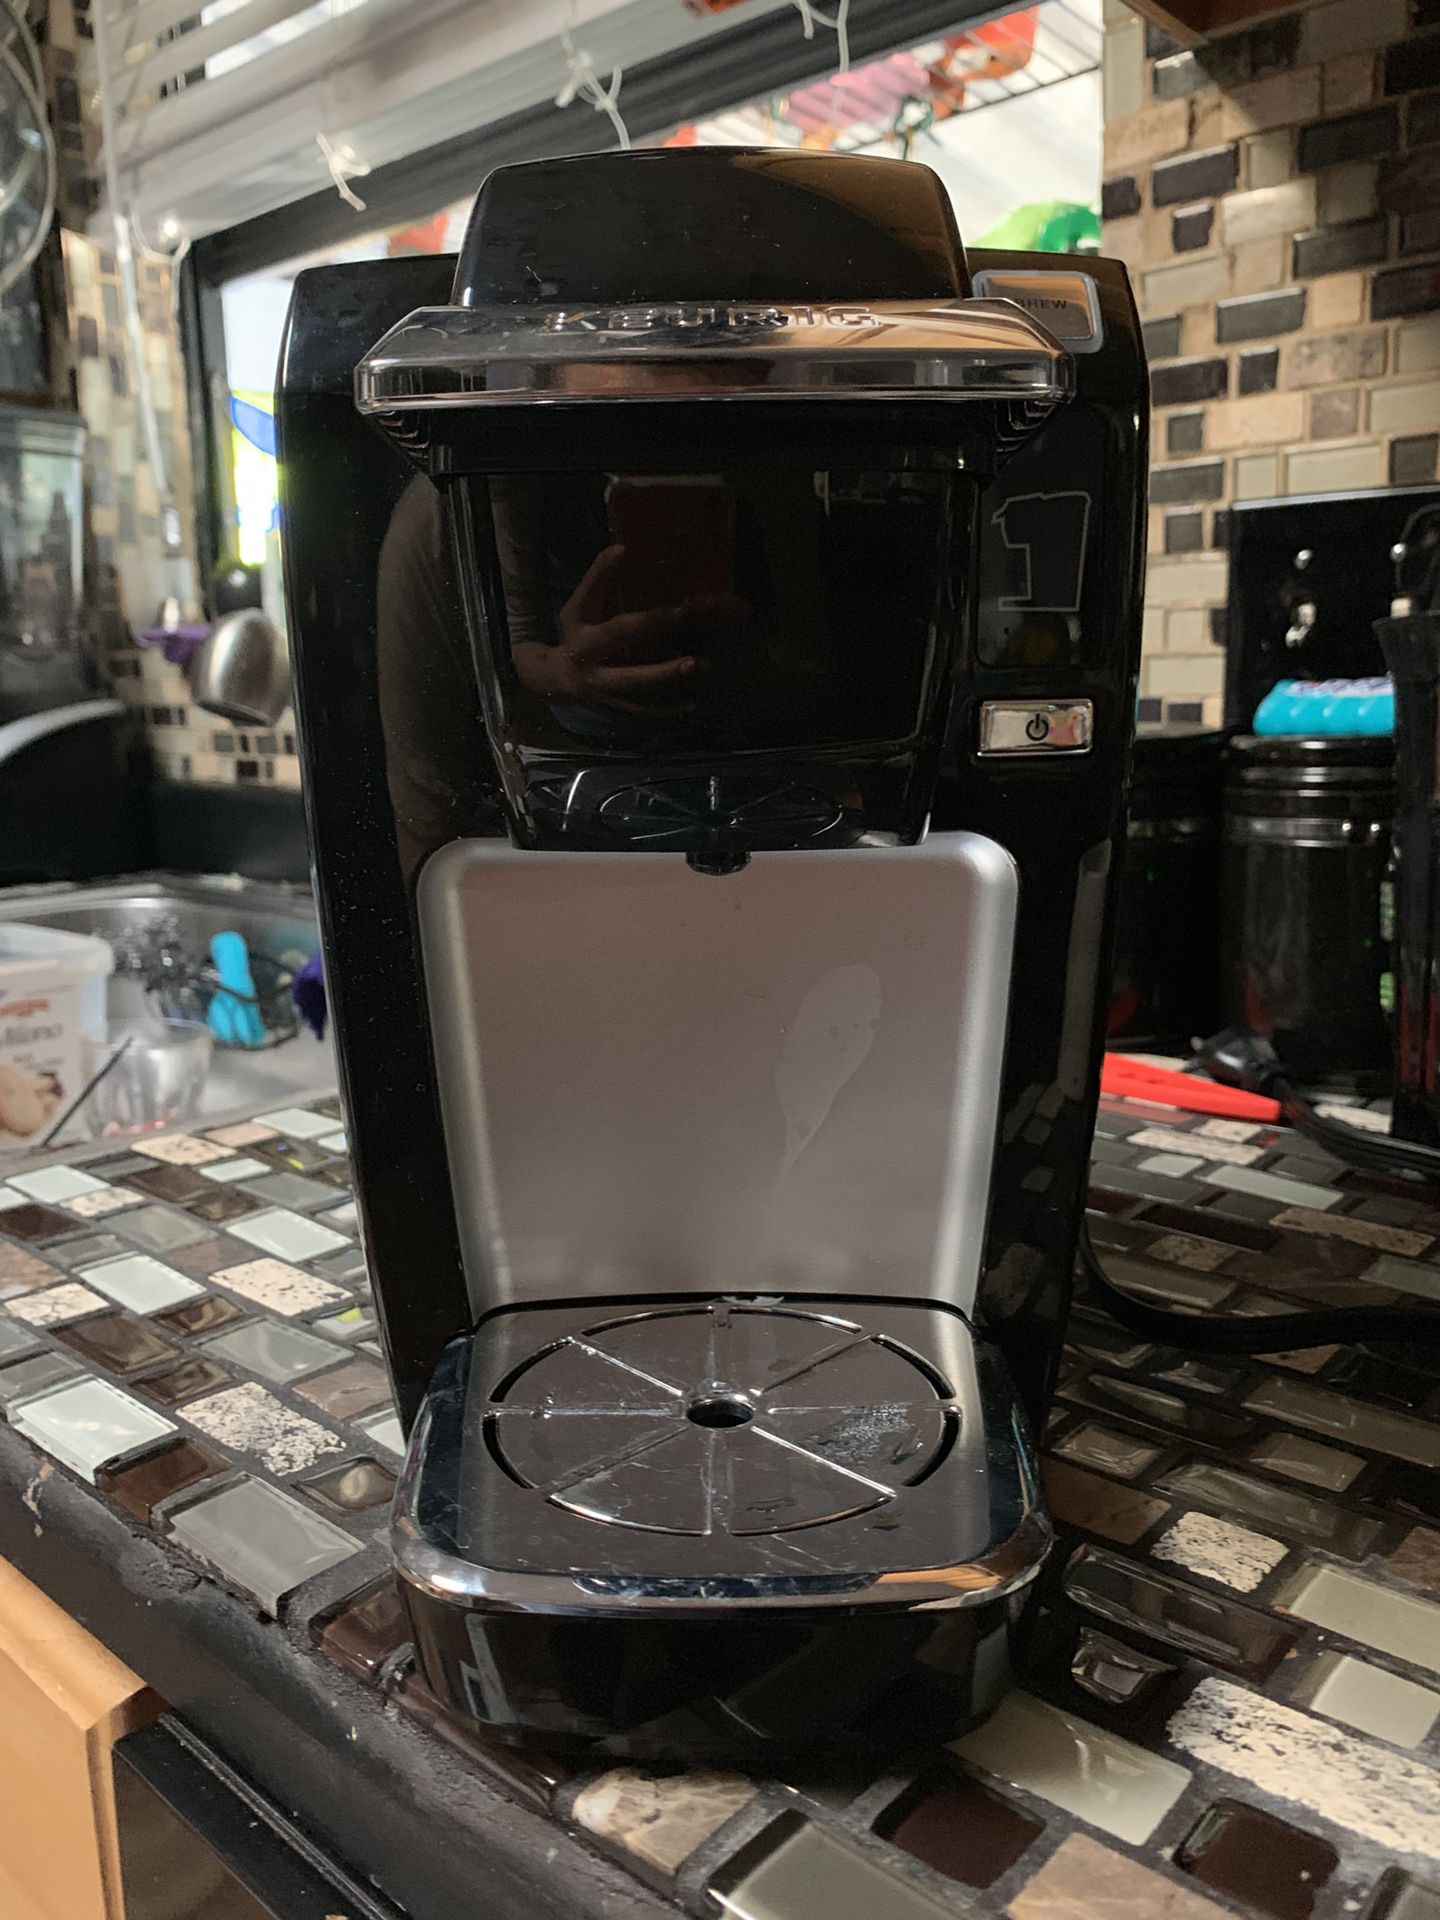 Keurig mini k15 coffee maker